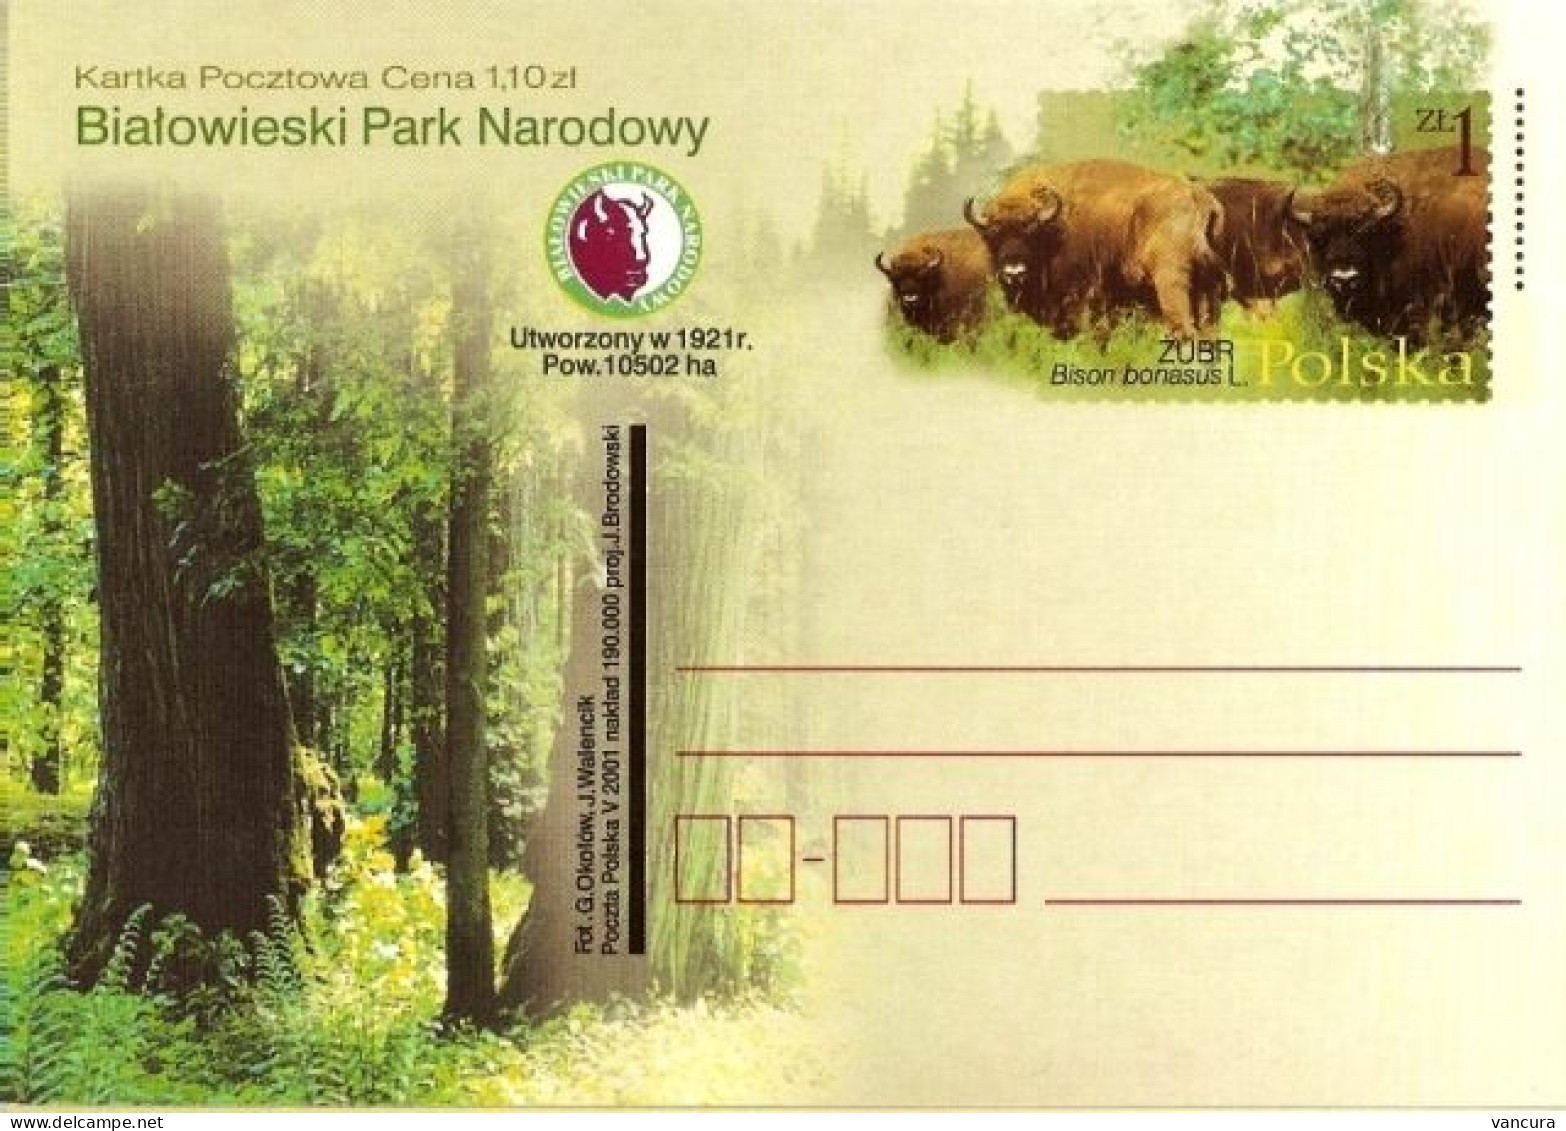 Cp 1260 Poland Bialowieski Park Narodowy Bison Bonasus L. 2001 - Kühe